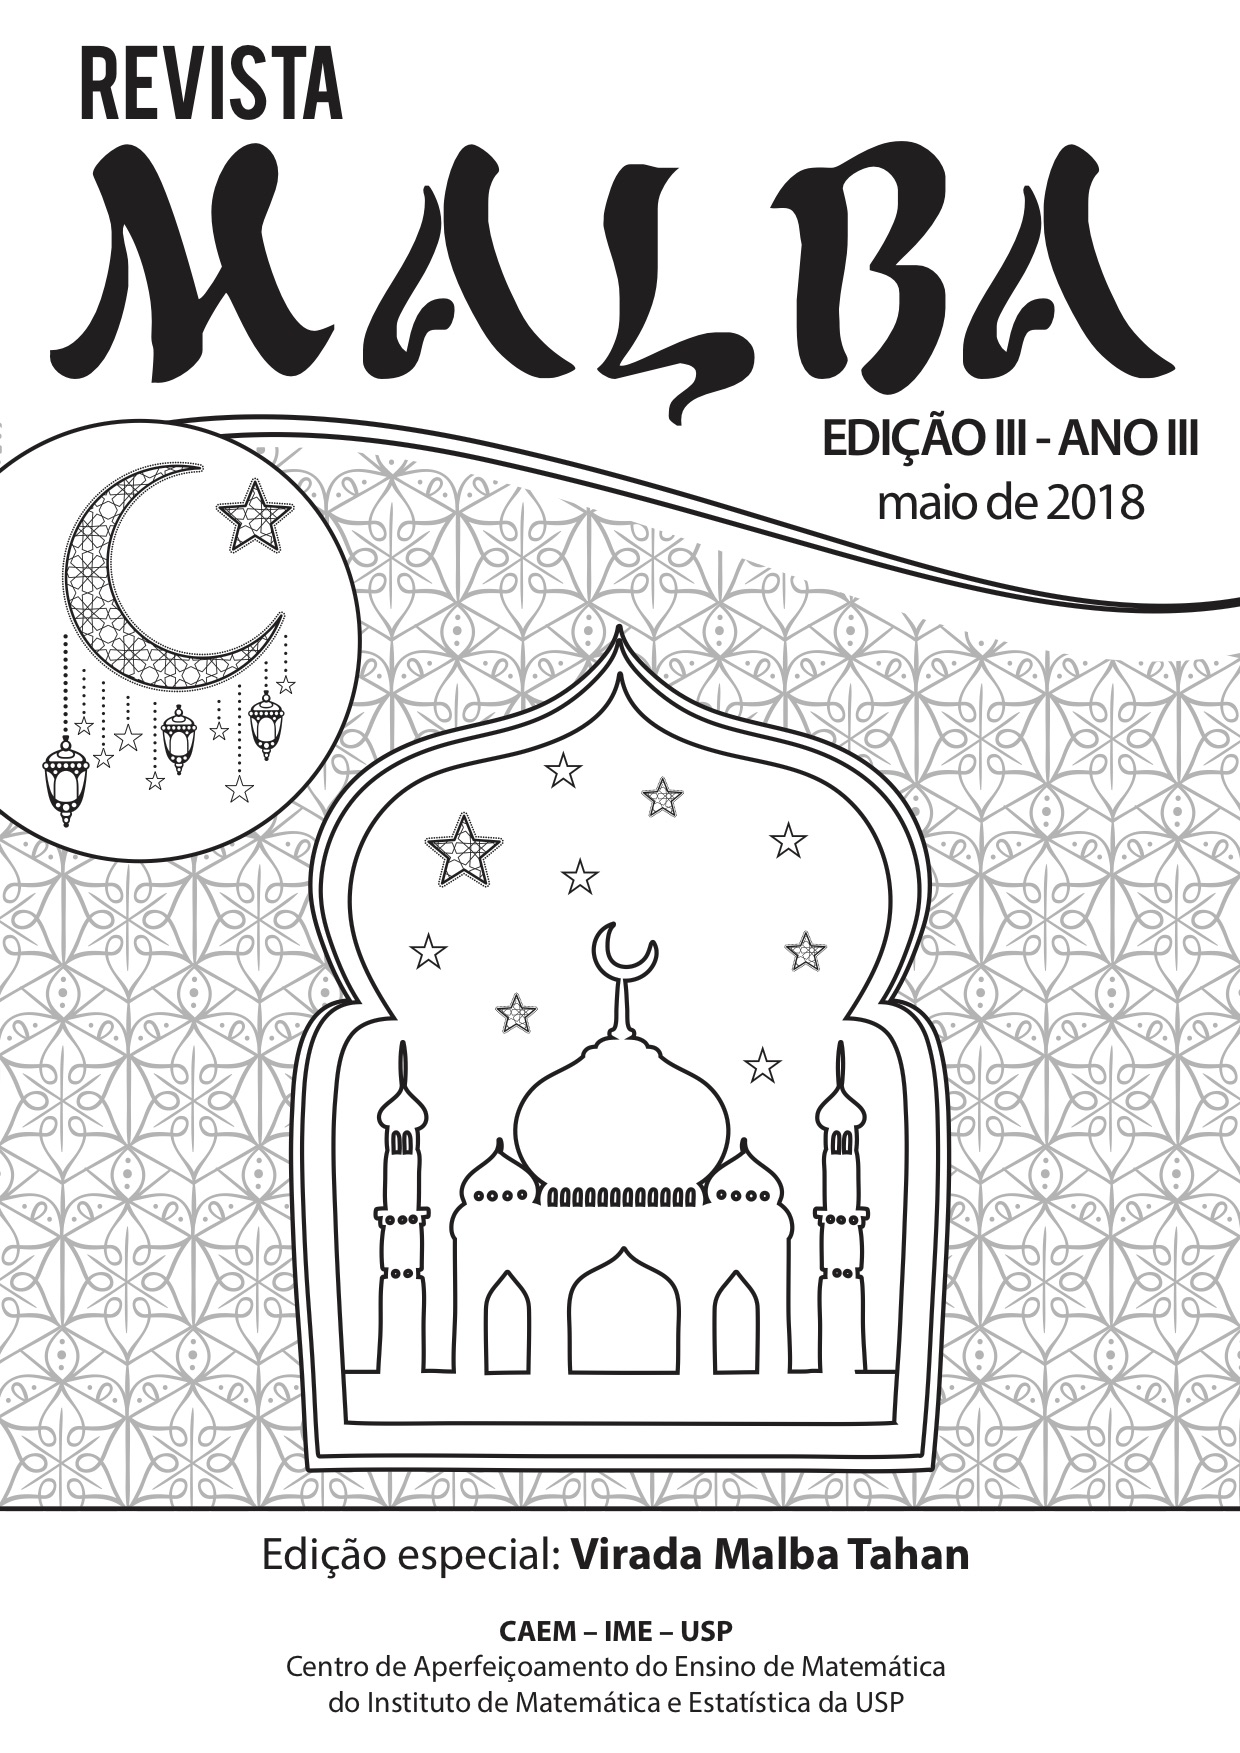 Link Revista Malba Tahan 2018